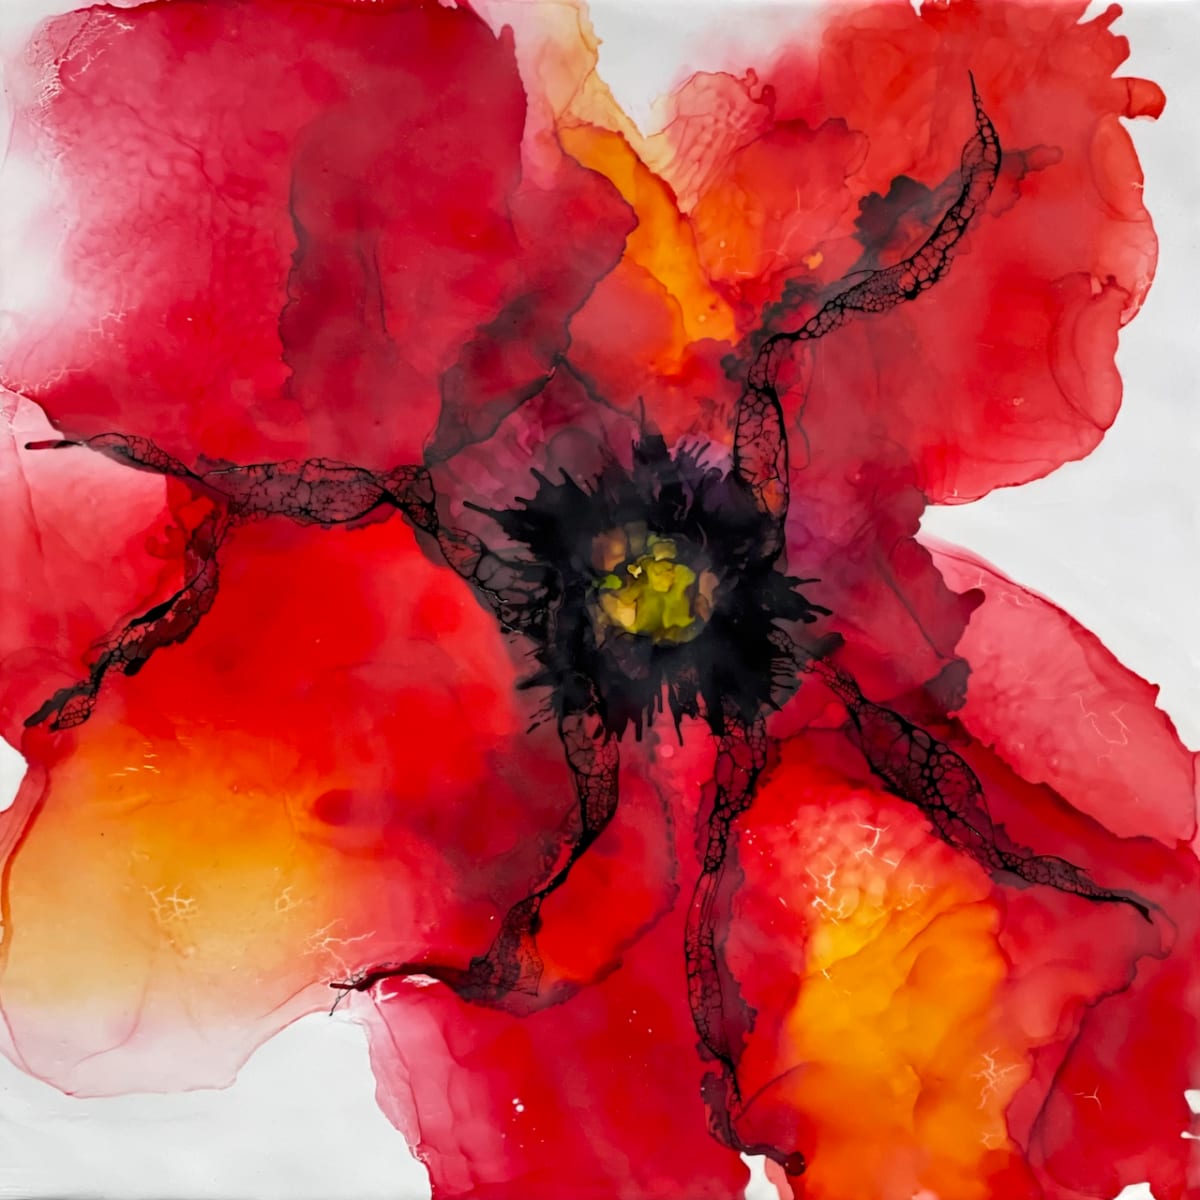 Poppy Red by Deborah Llewellyn  Image: 18"x18" - mixed media & encaustic on wood panel